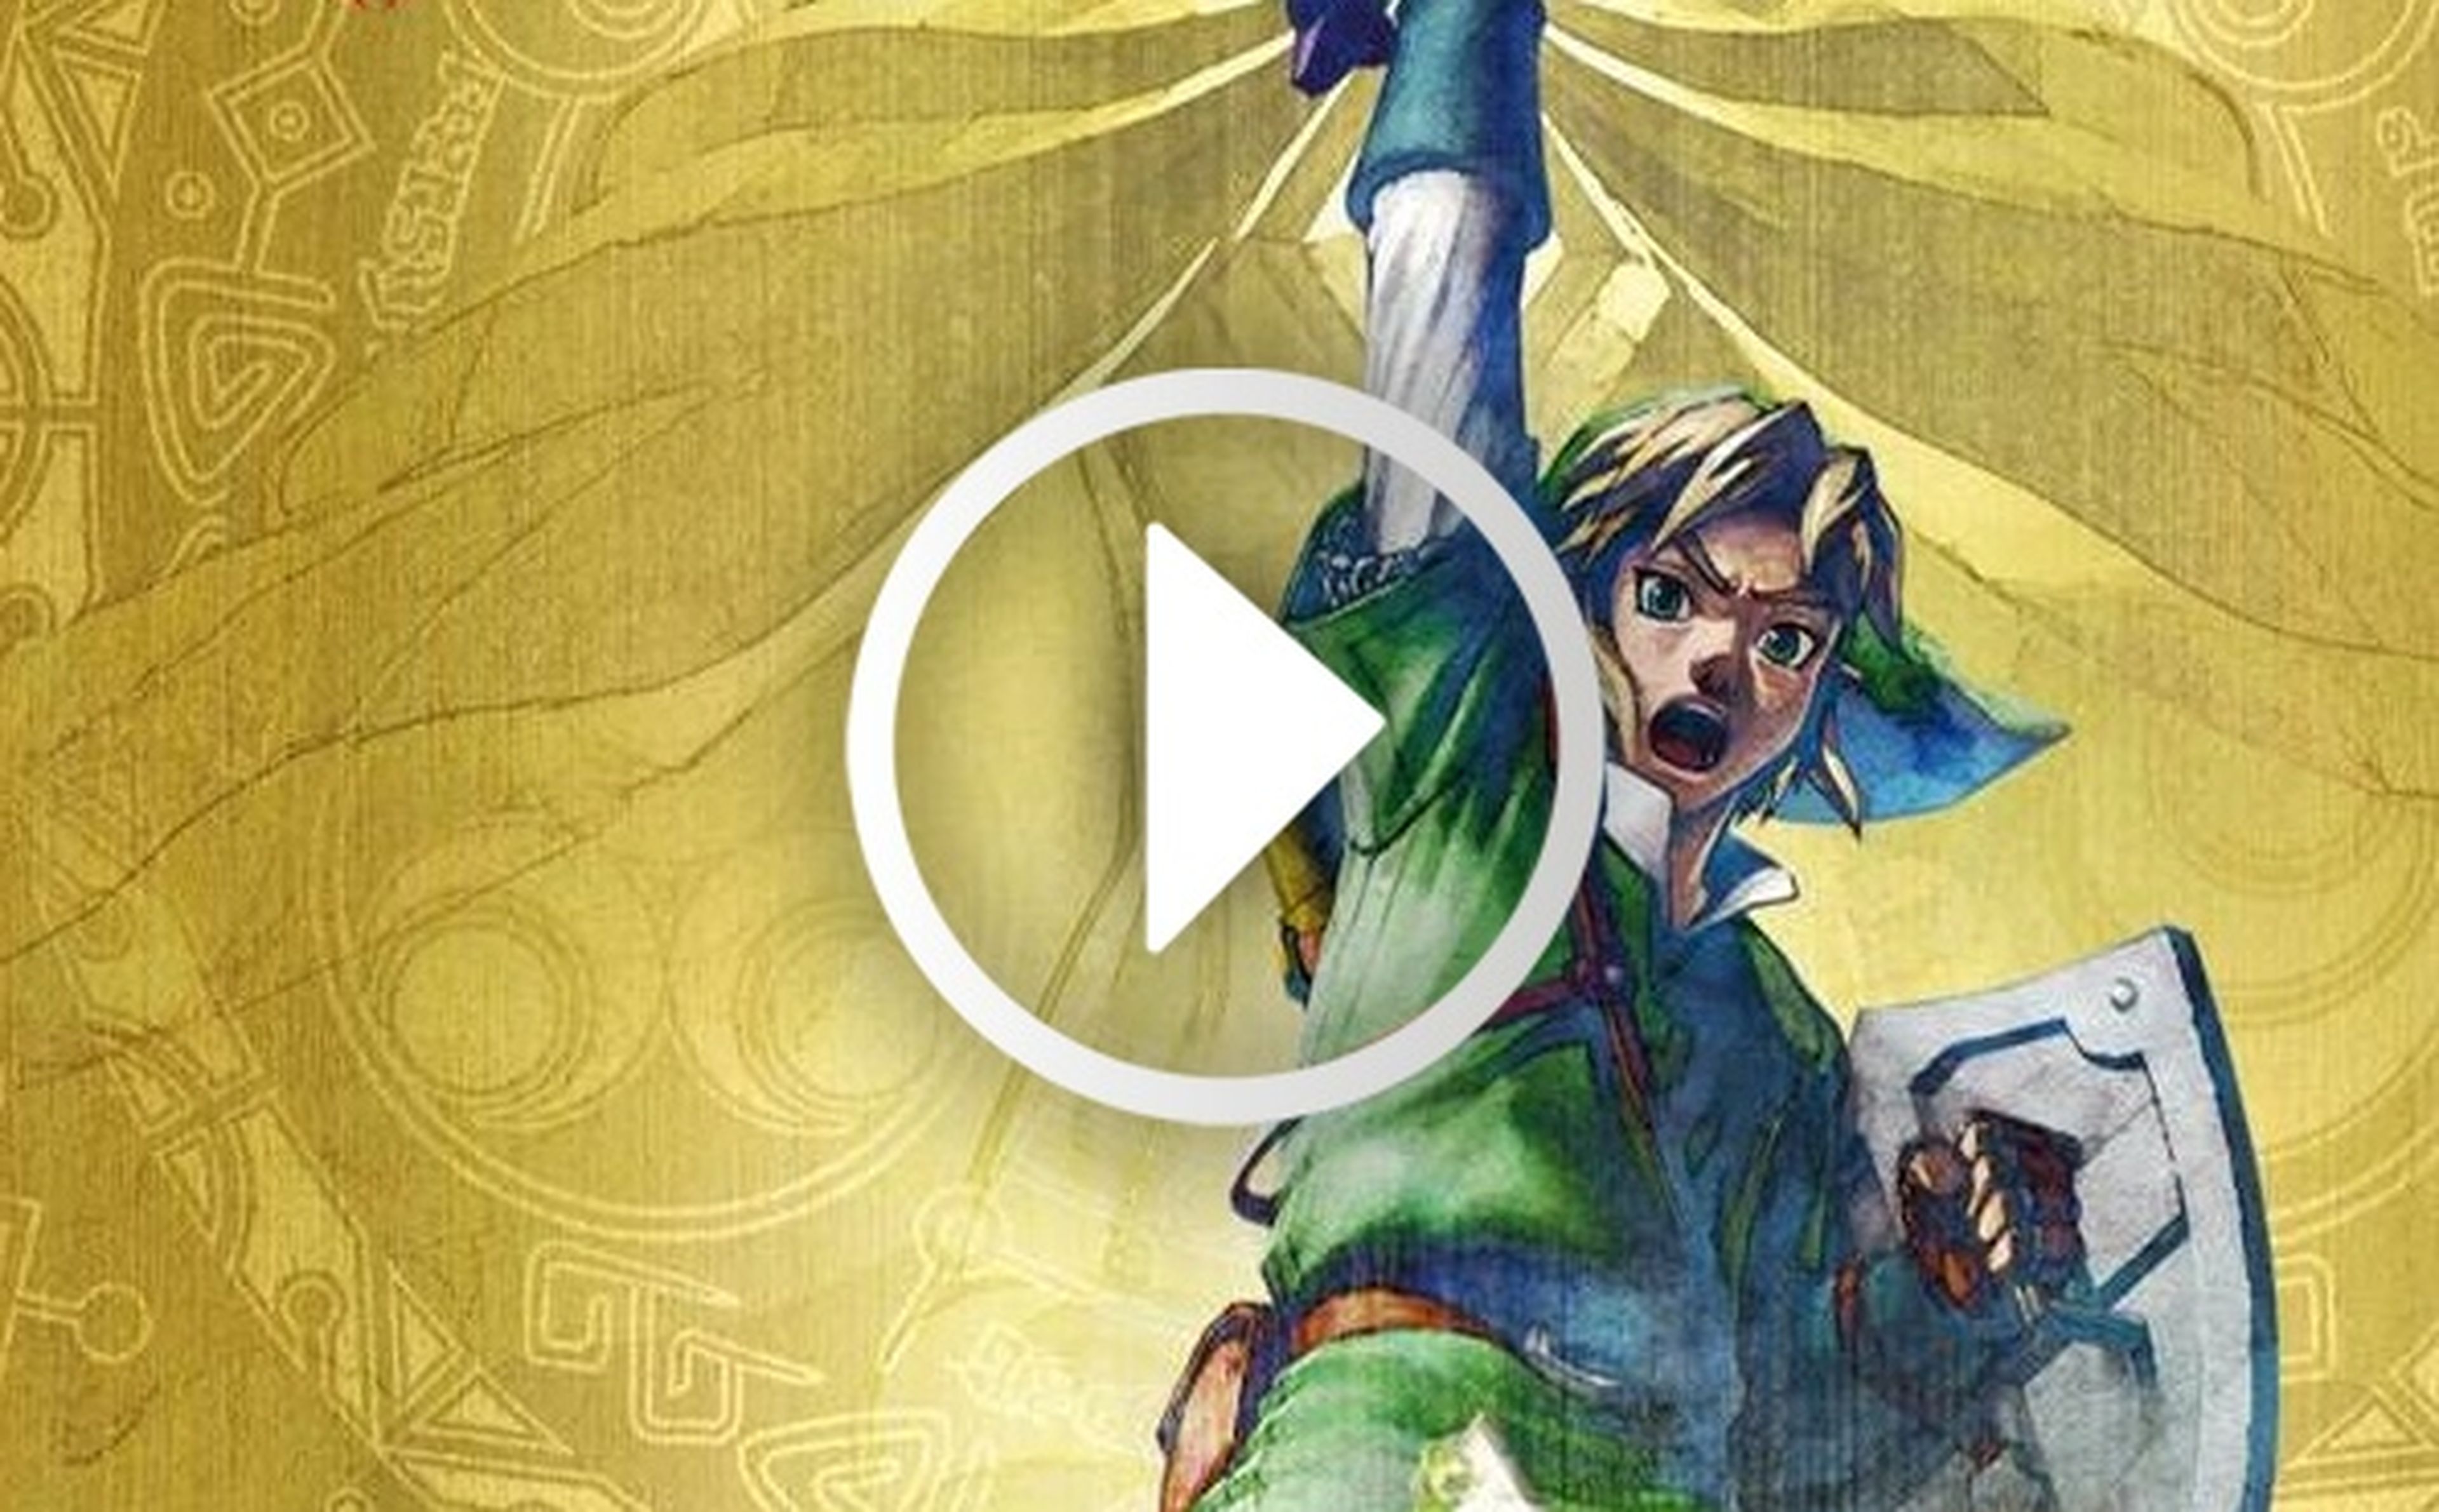 Los 25 años de Zelda en vídeo